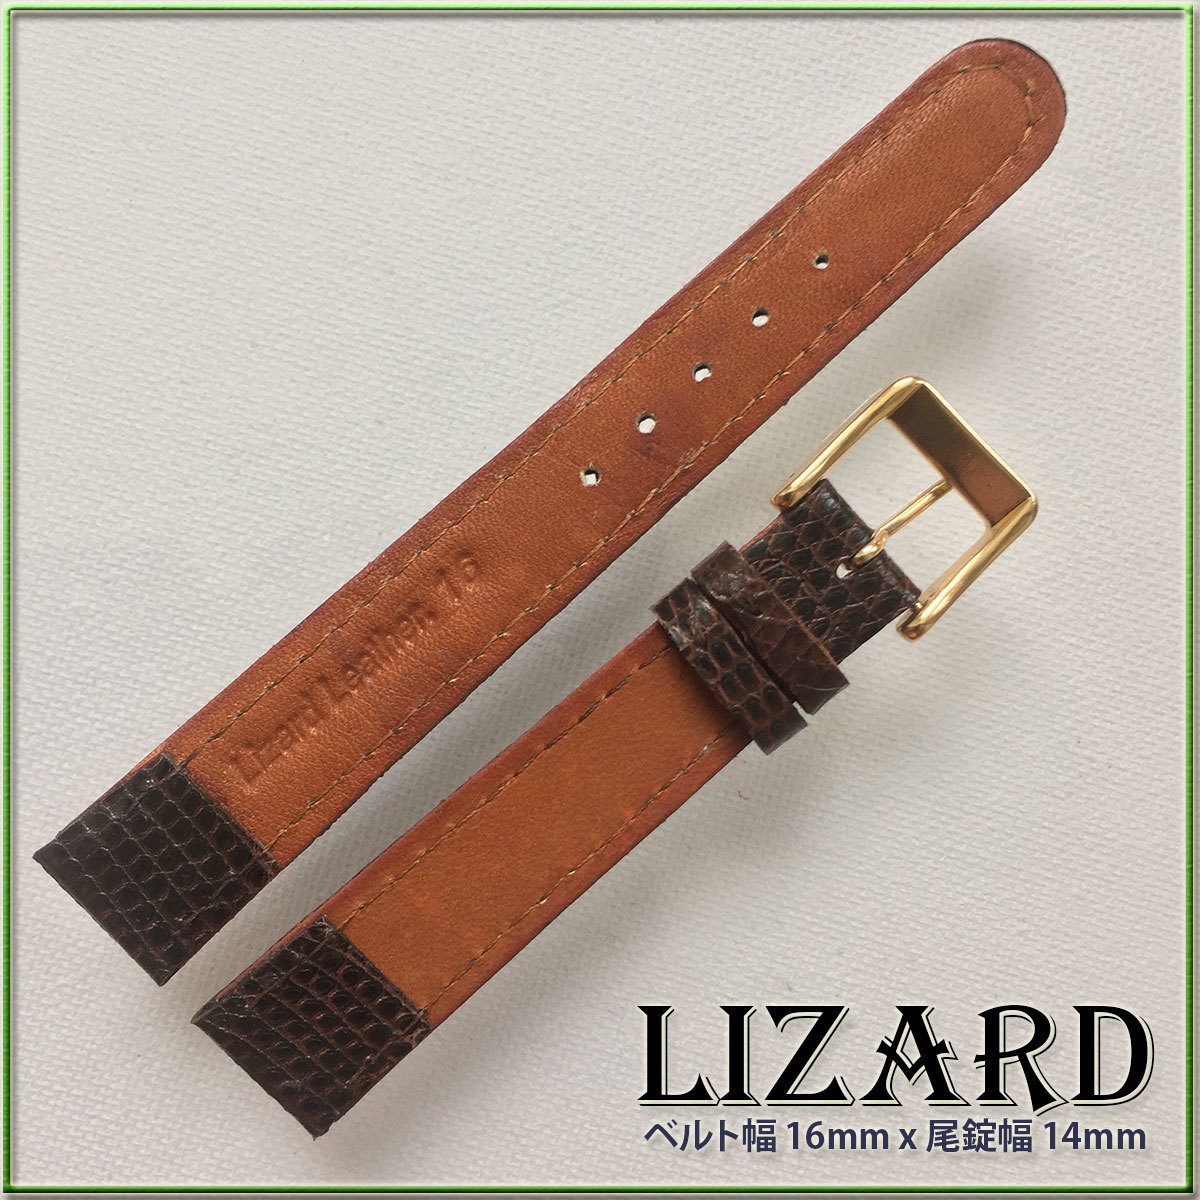  специальный заказ 16mm мягкость Lizard натуральная кожа Hermes часы ремень DARK BROWN HANDMADE GOLD распорка 